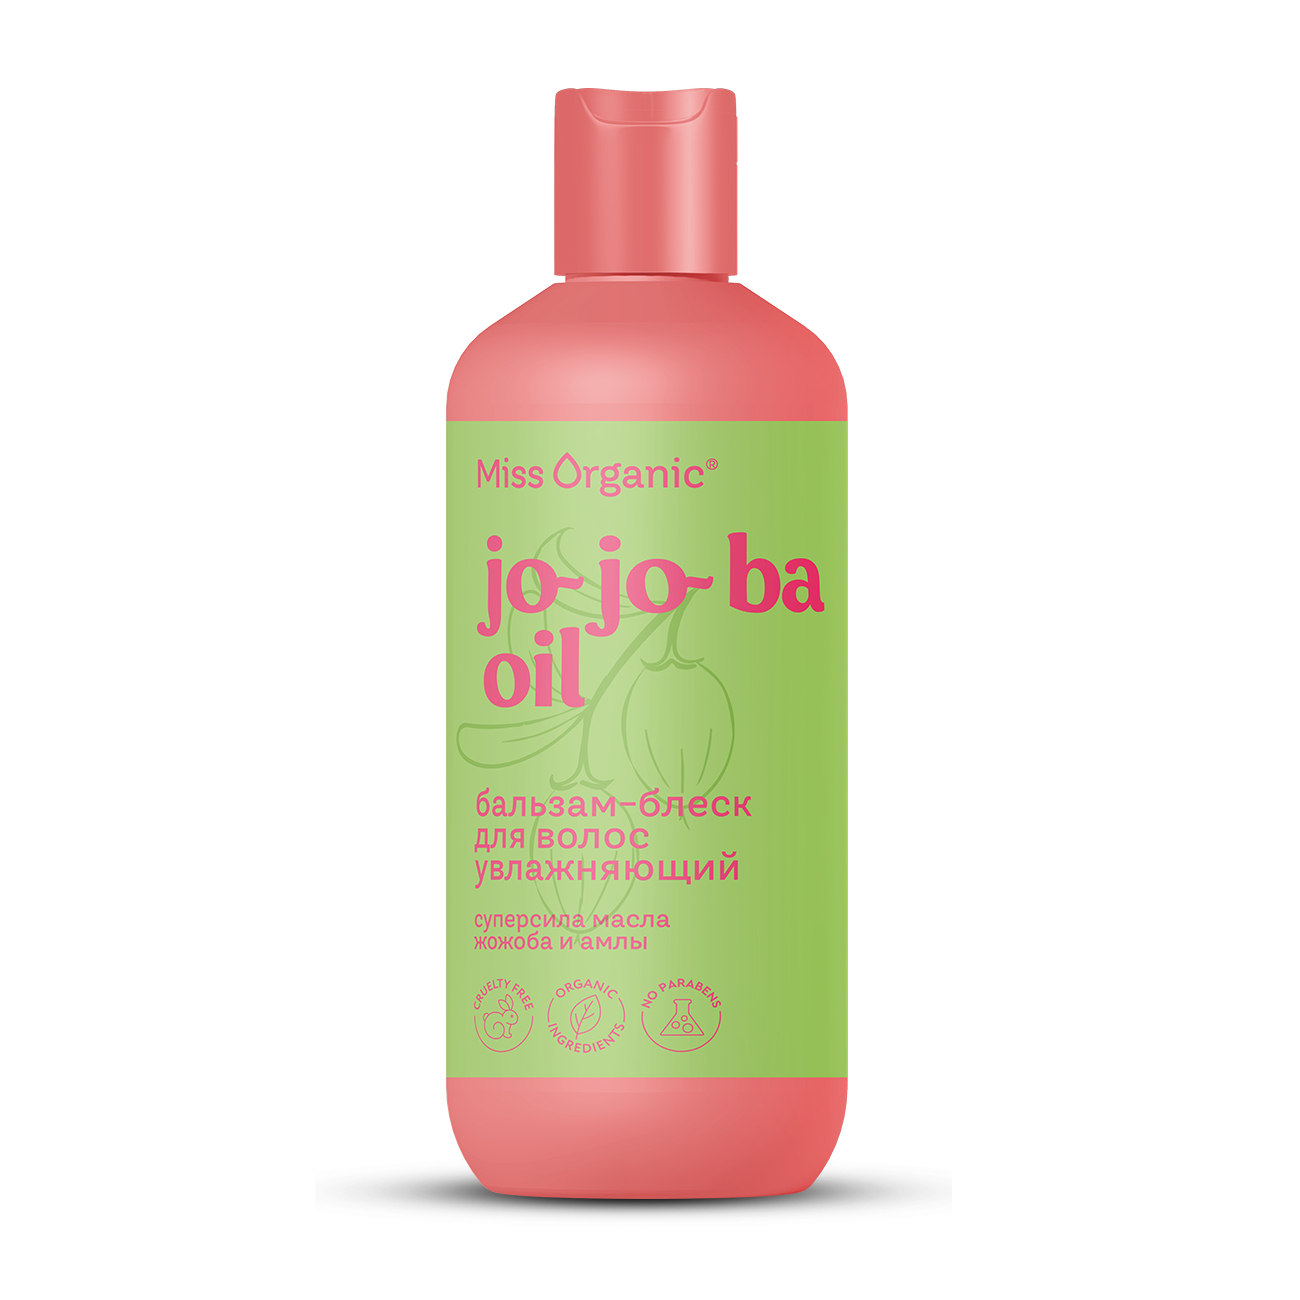 Бальзам для волос Miss Organic Jo-jo-ba Oil увлажняющий, 290 мл масло с экстрактом семян черного тмина для интенсивного восстановления волос luxury